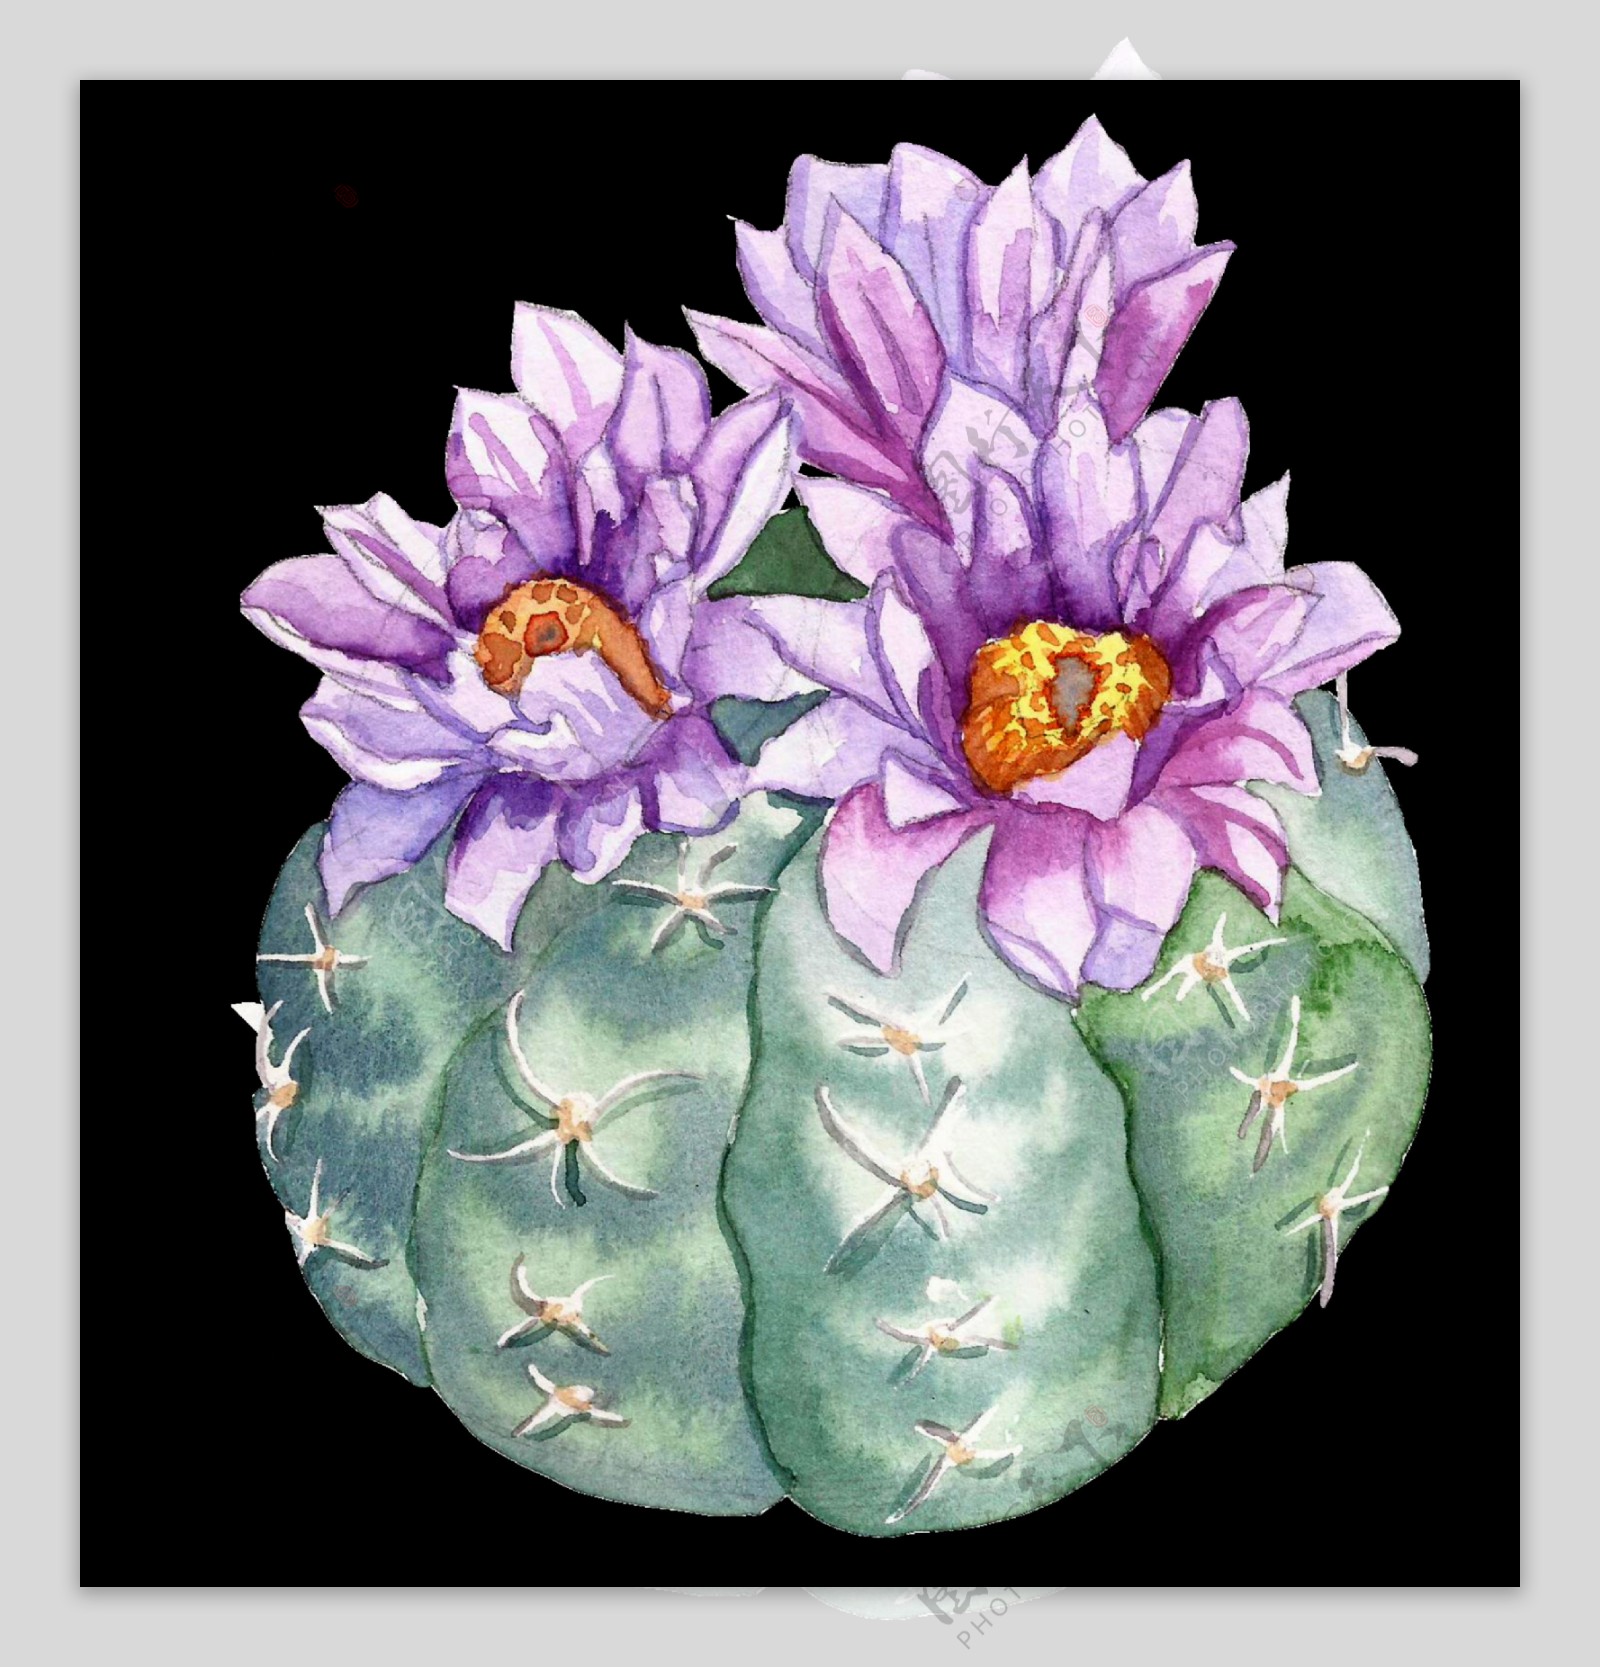 紫色水彩手绘仙人掌花朵透明素材